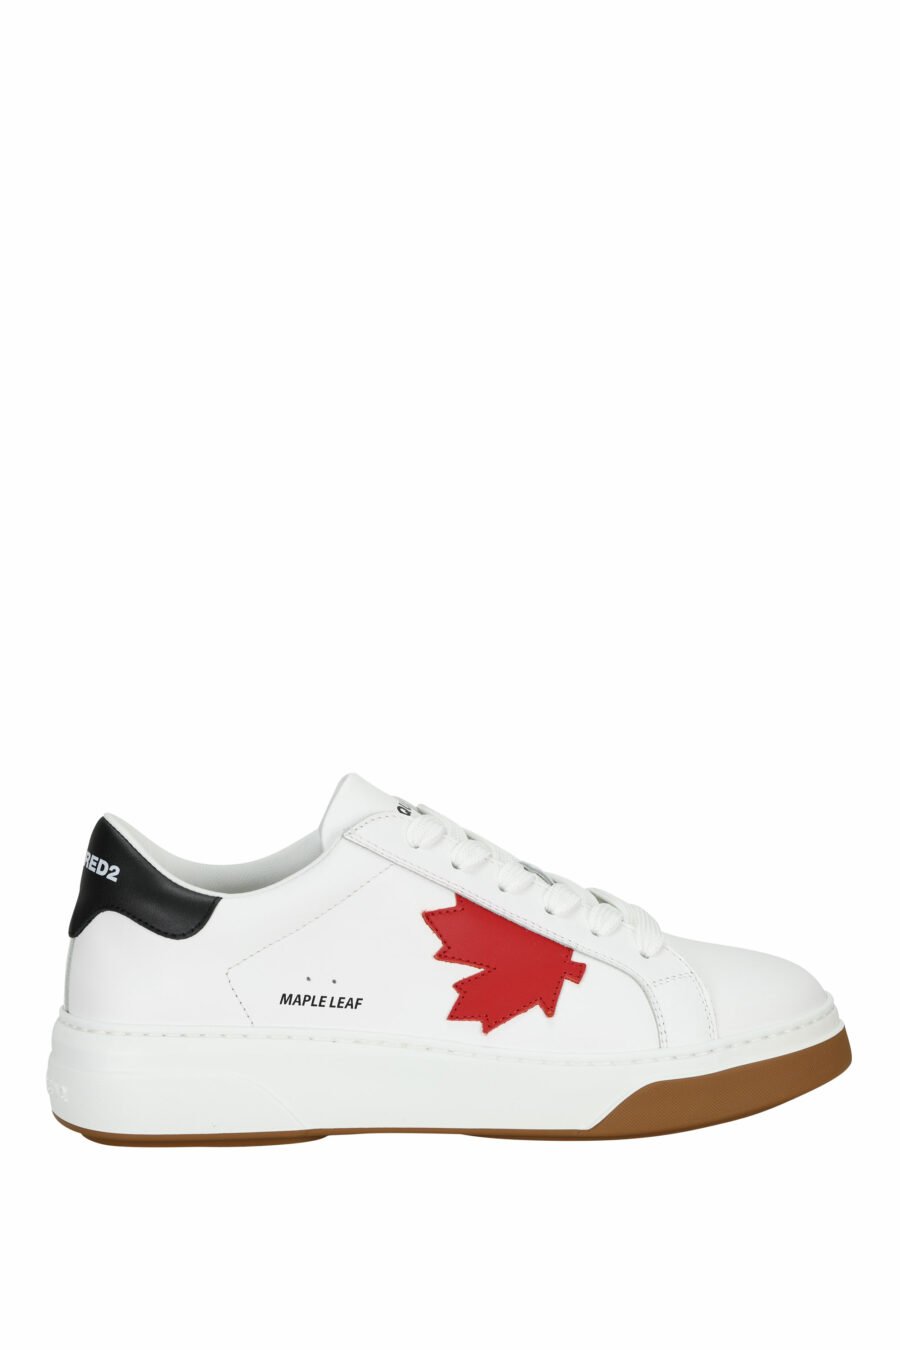 Zapatillas blancas con minilogo rojo y suela bicolor - 8055777319338 1